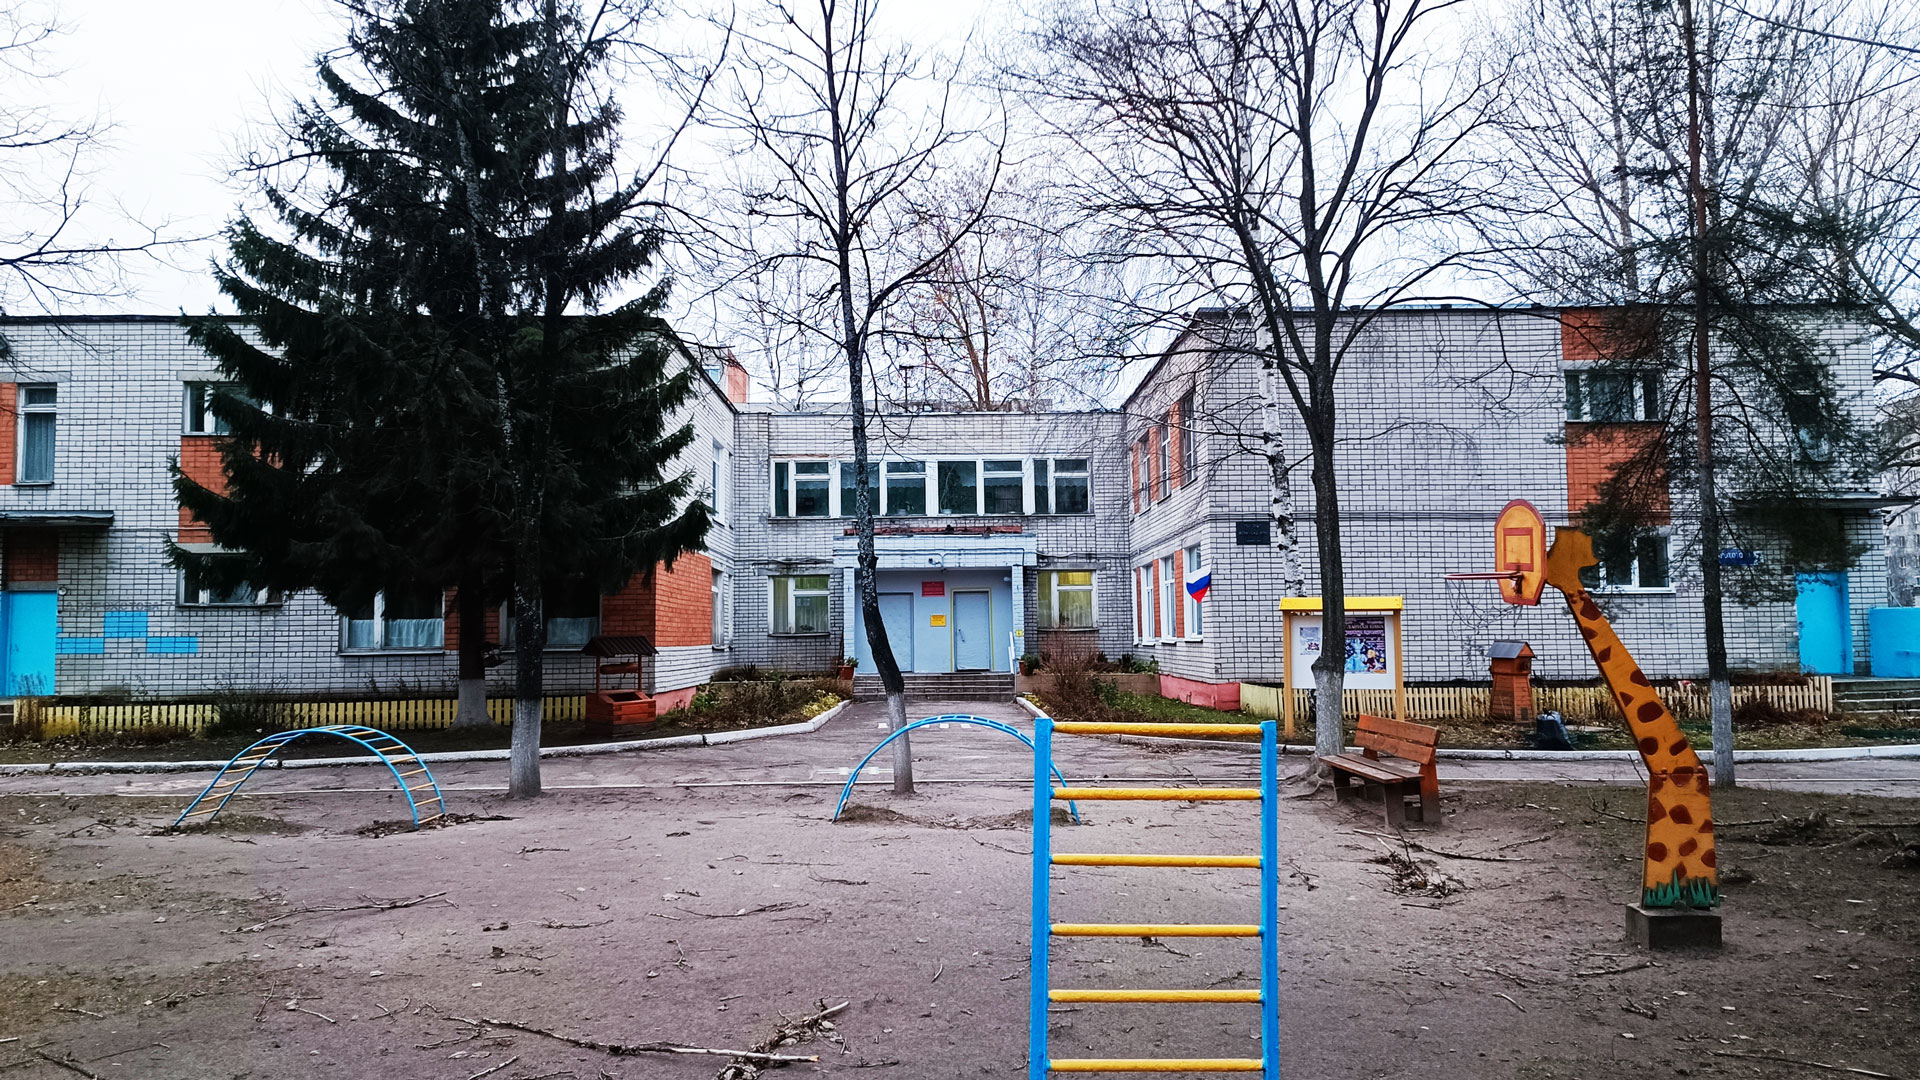 Детский сад 155 Ярославль: общий вид здания.